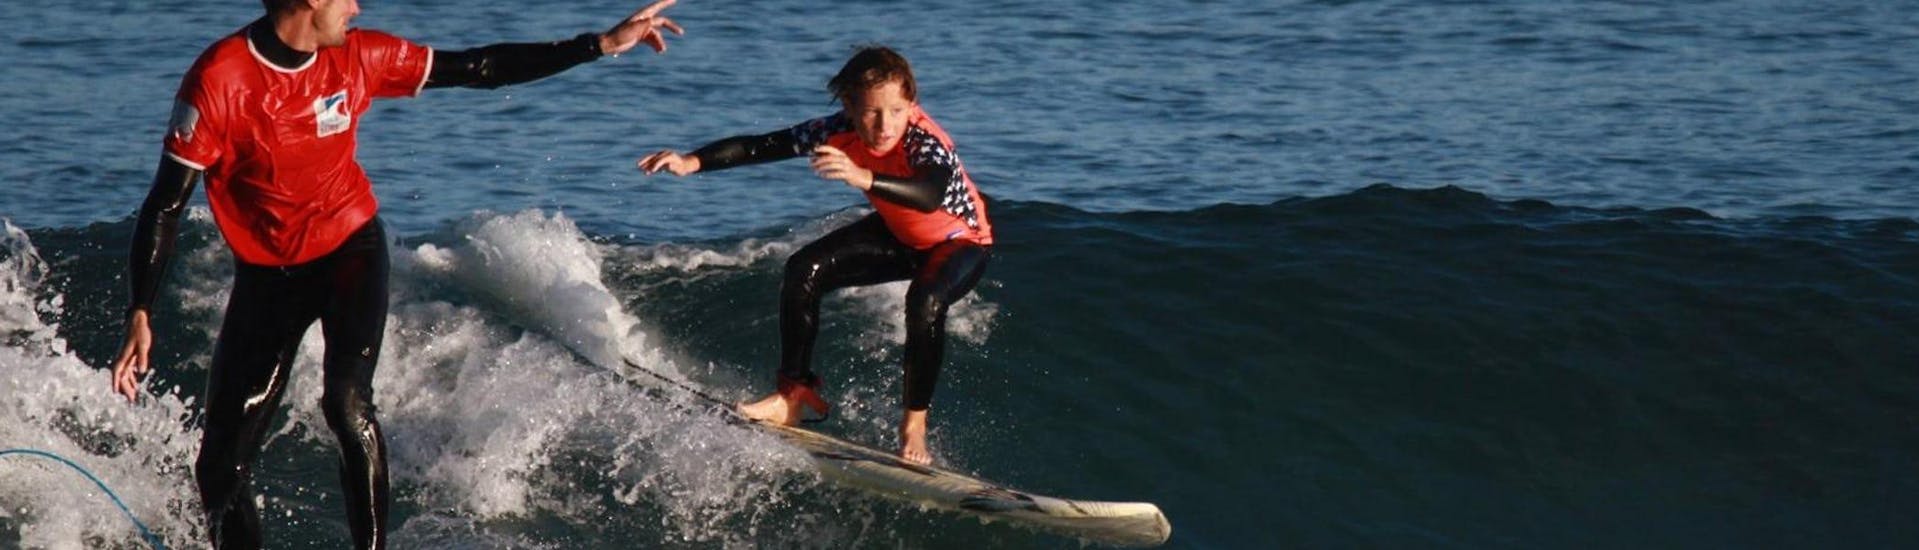 Un niño participa en el Curso de Surf - incl. Traslado - Intermedio con Gold Coast Hendaya.